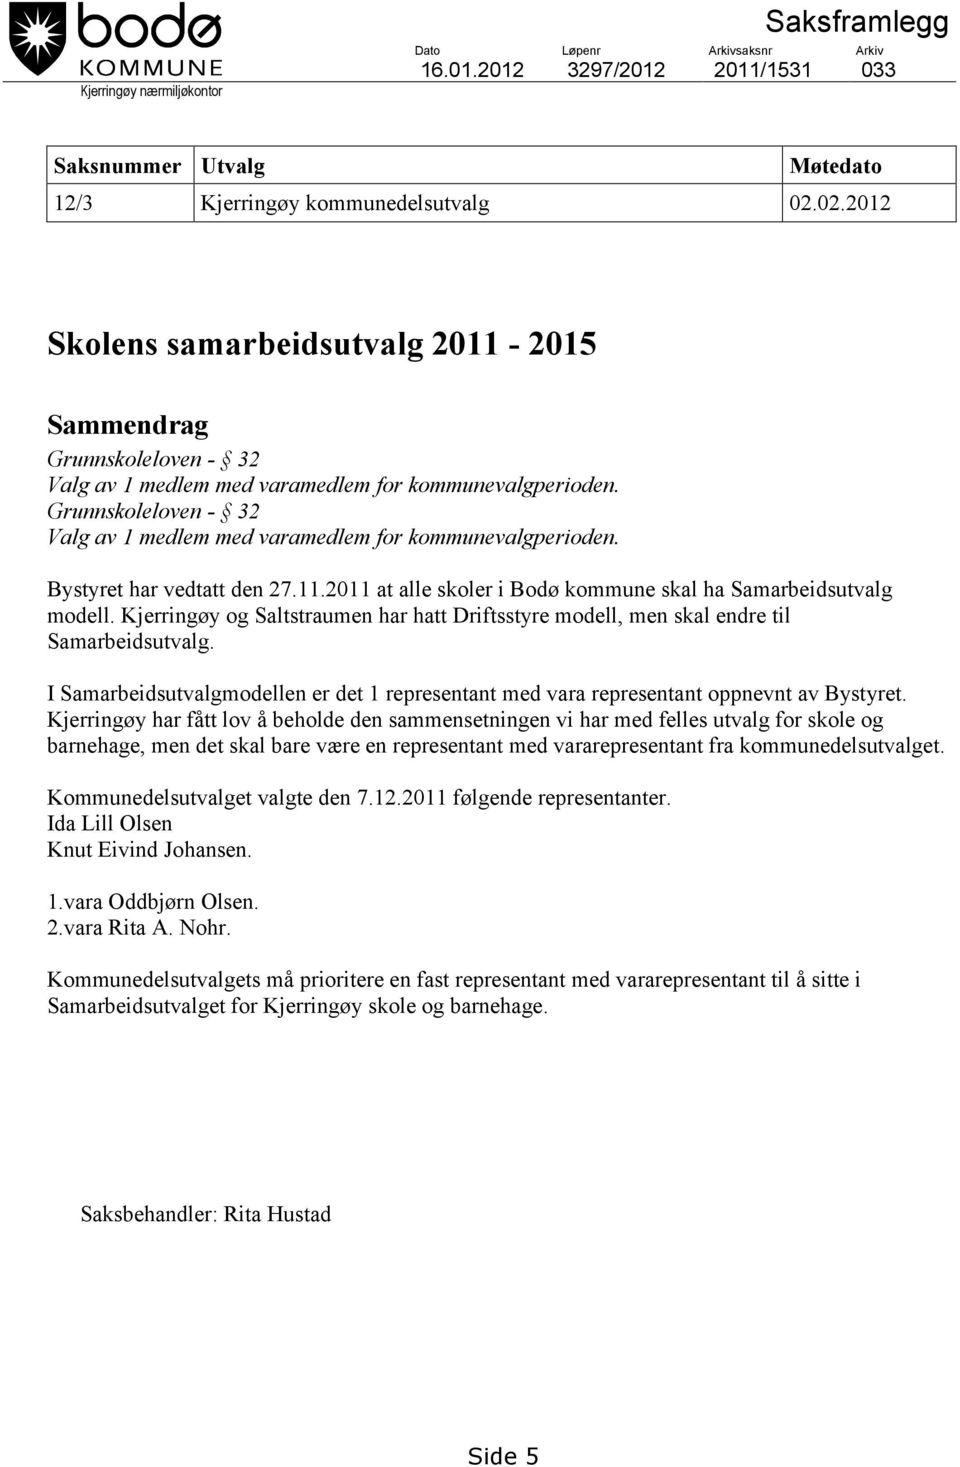 Grunnskoleloven - 32 Valg av 1 medlem med varamedlem for kommunevalgperioden. Bystyret har vedtatt den 27.11.2011 at alle skoler i Bodø kommune skal ha Samarbeidsutvalg modell.